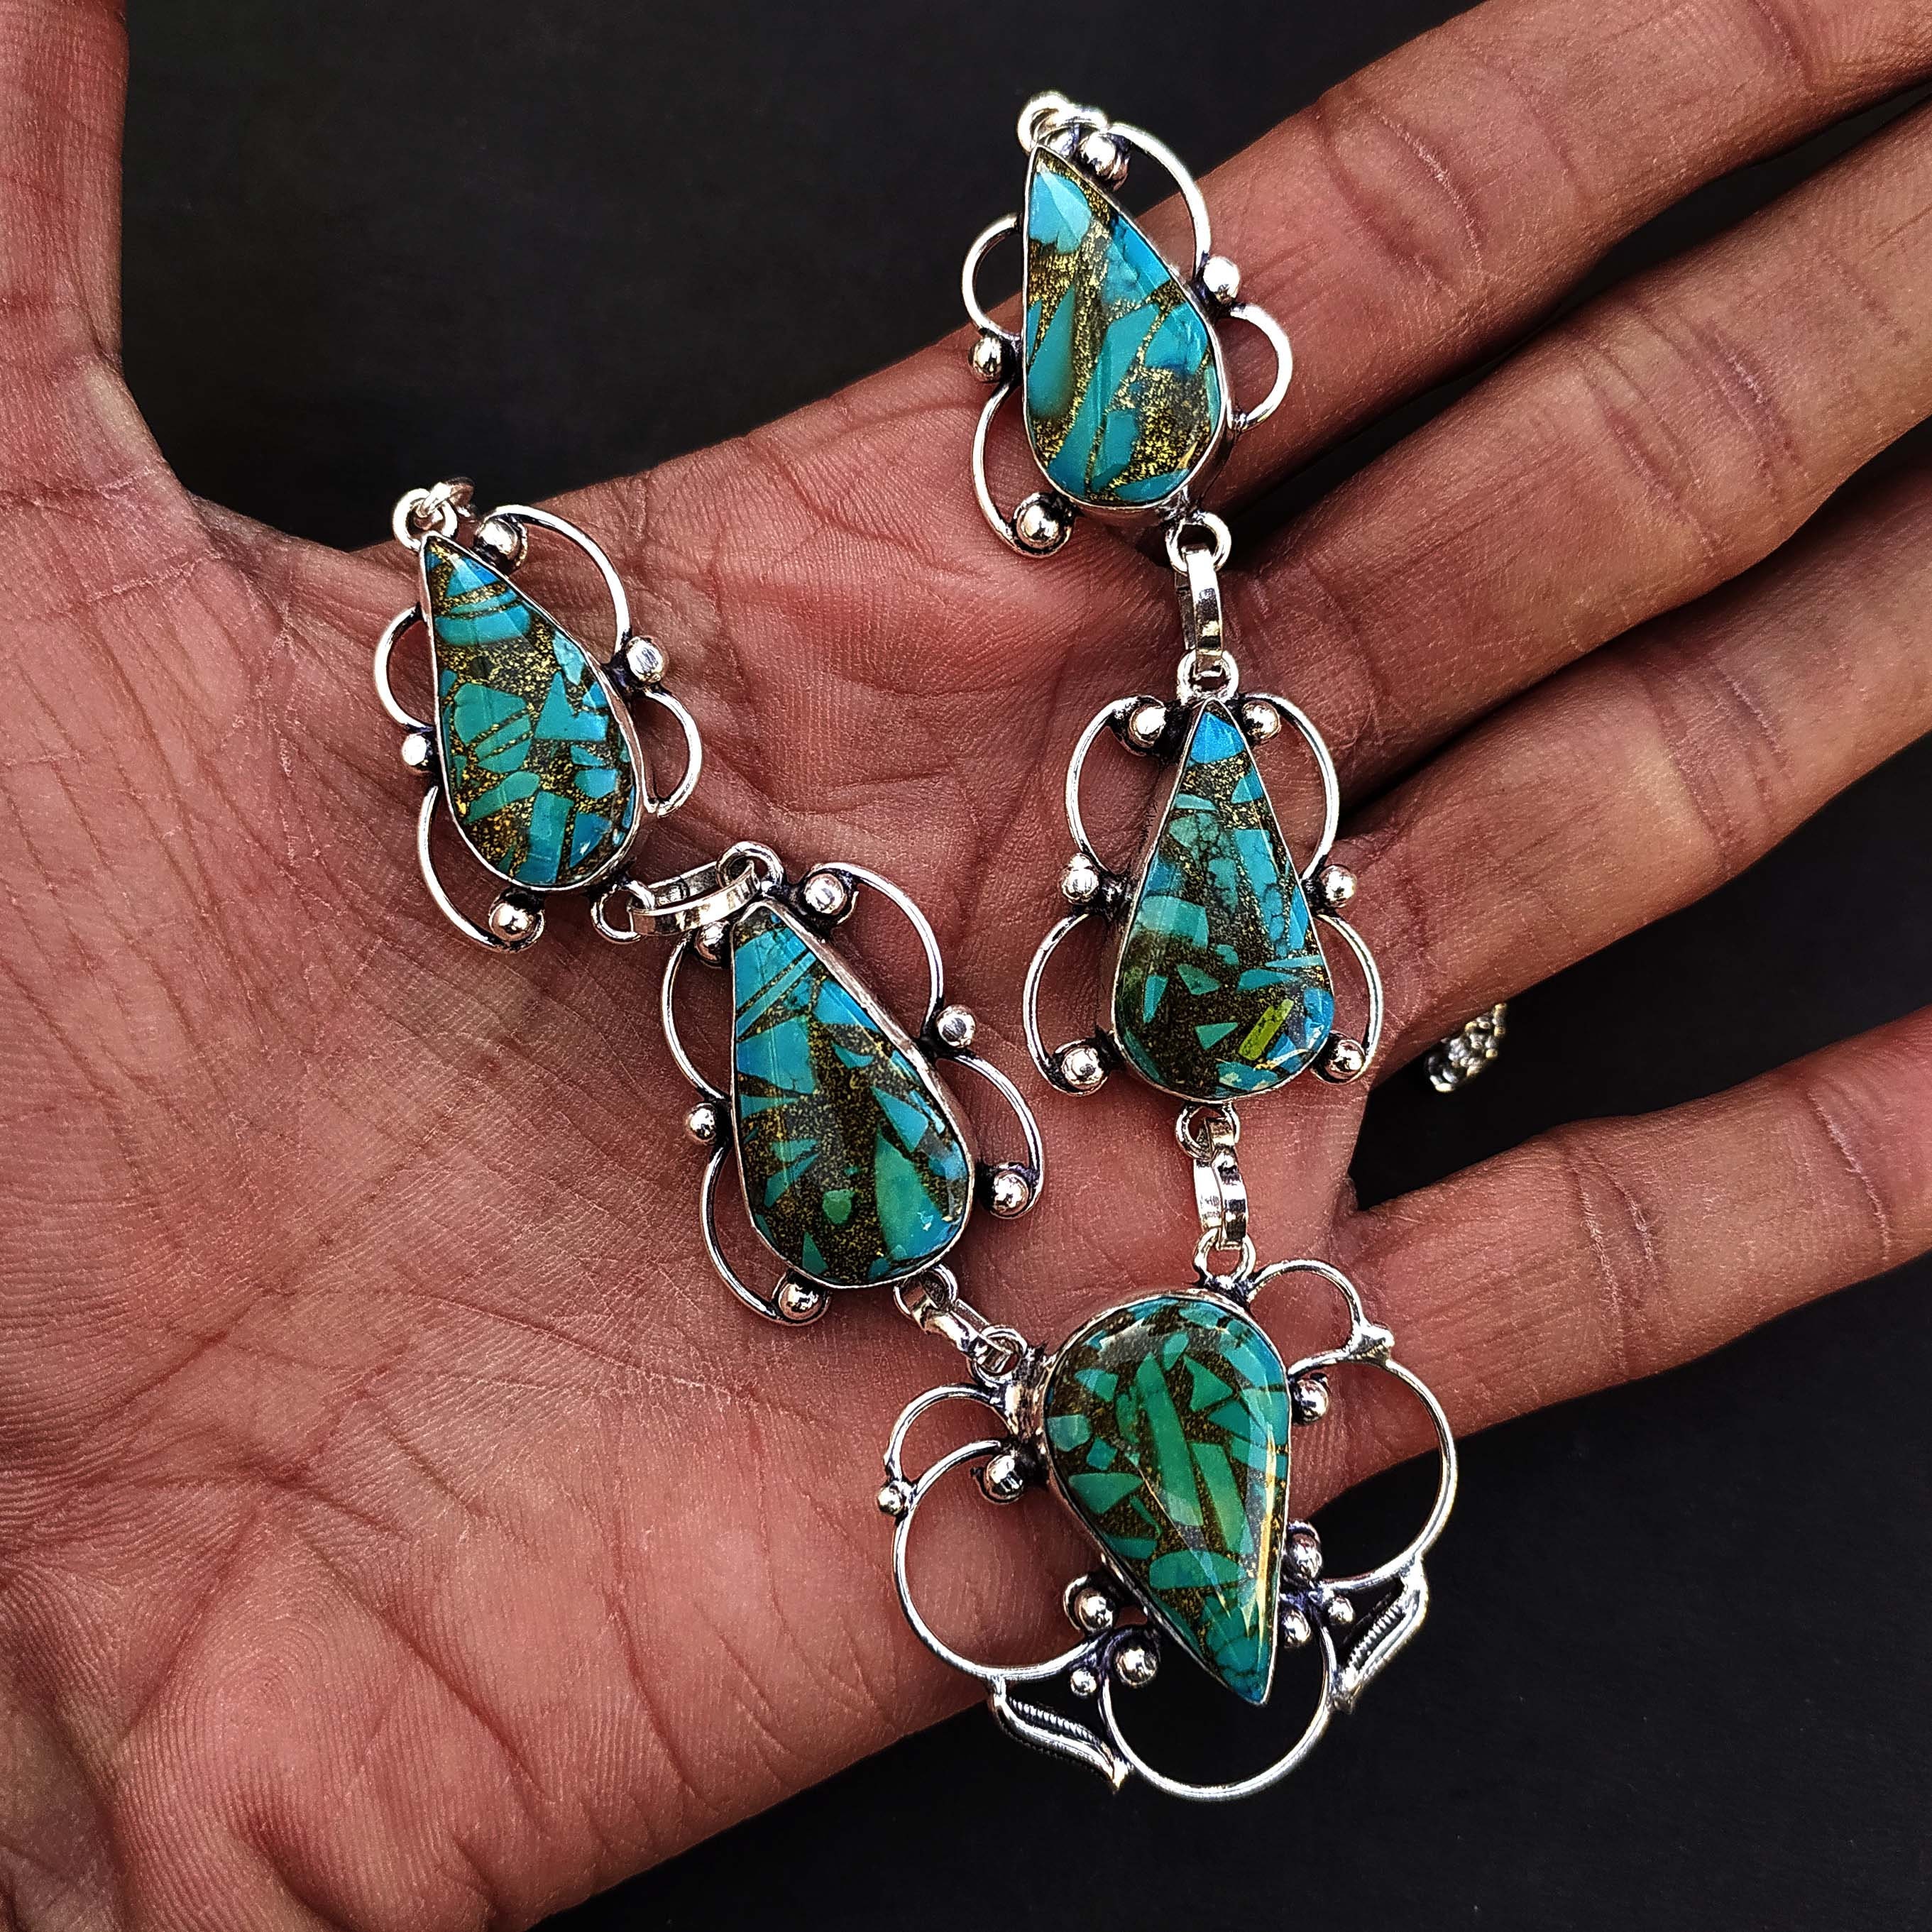 Copper Turquoise Handmade Fashion Jewelry Gemstone Necklace Etsy